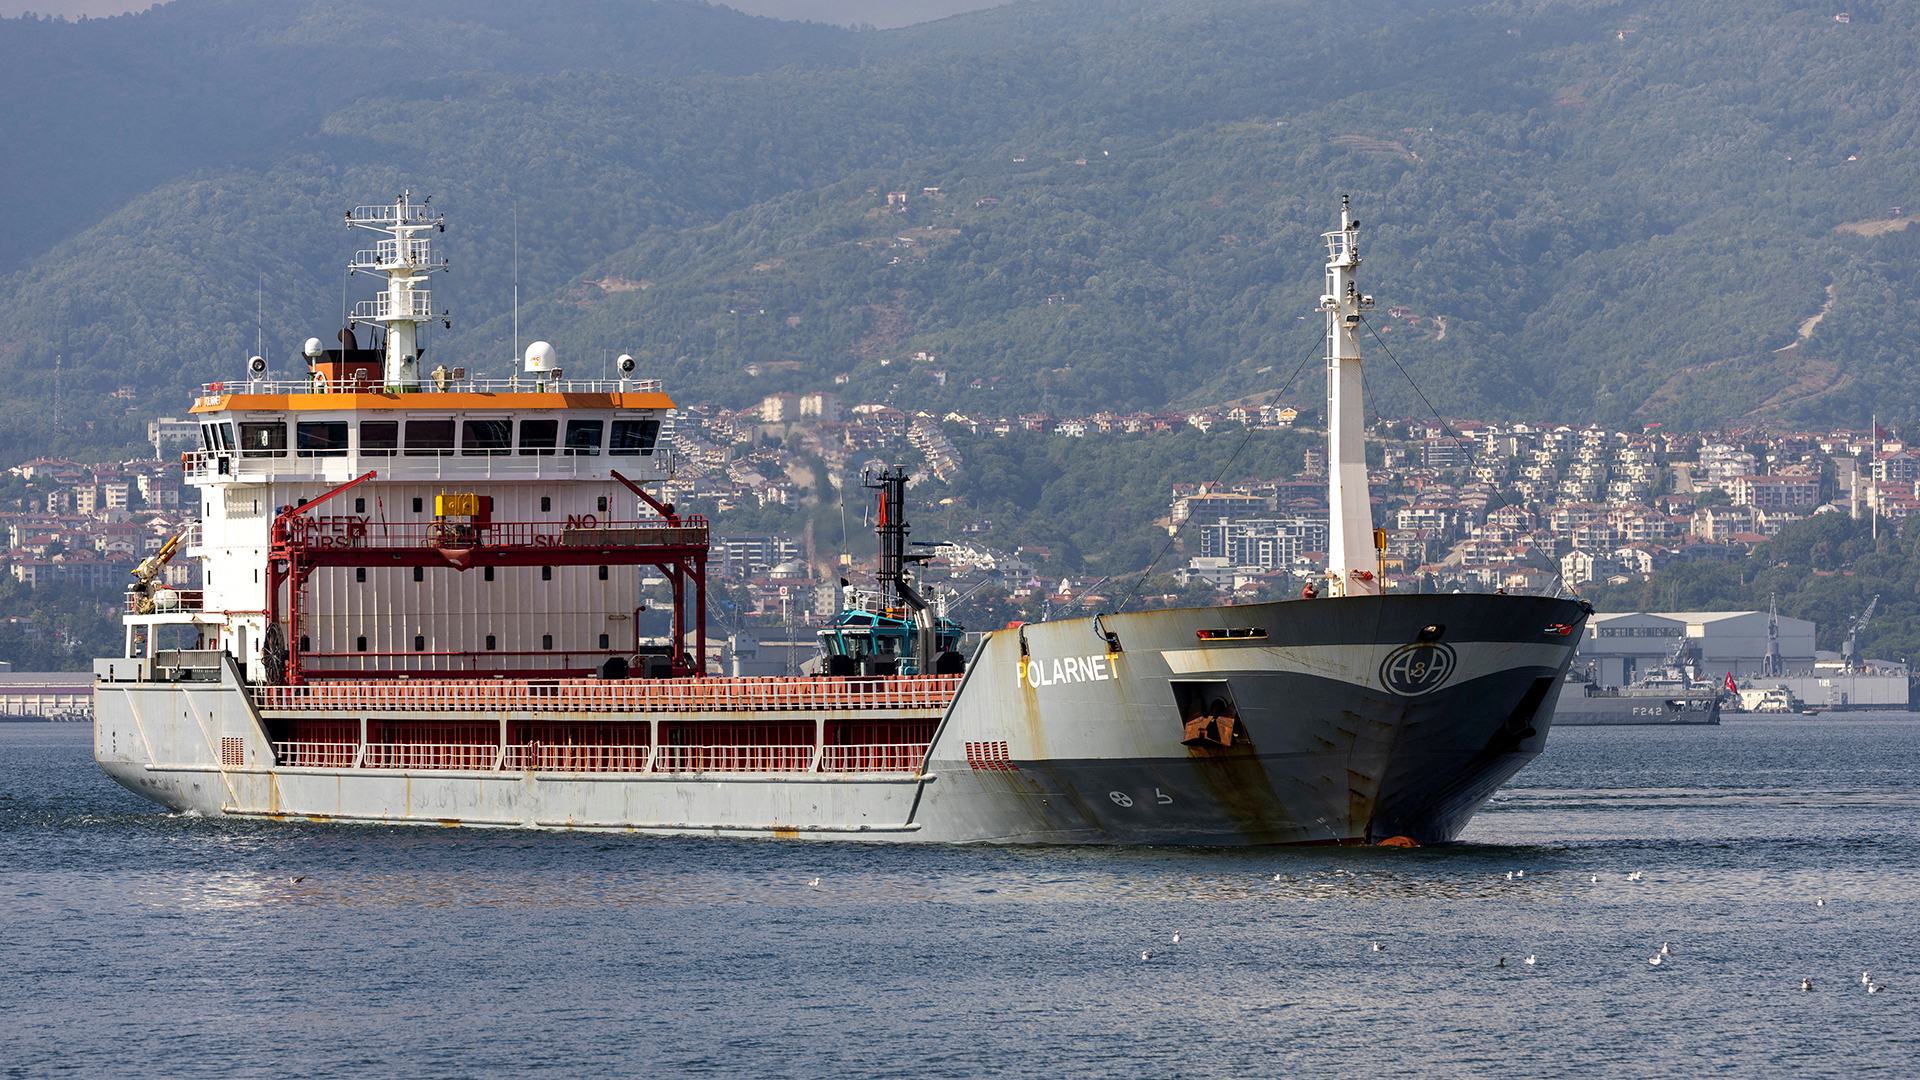 Der Frachter "Polarnet" vor der türkischen Küste im Marmarameer